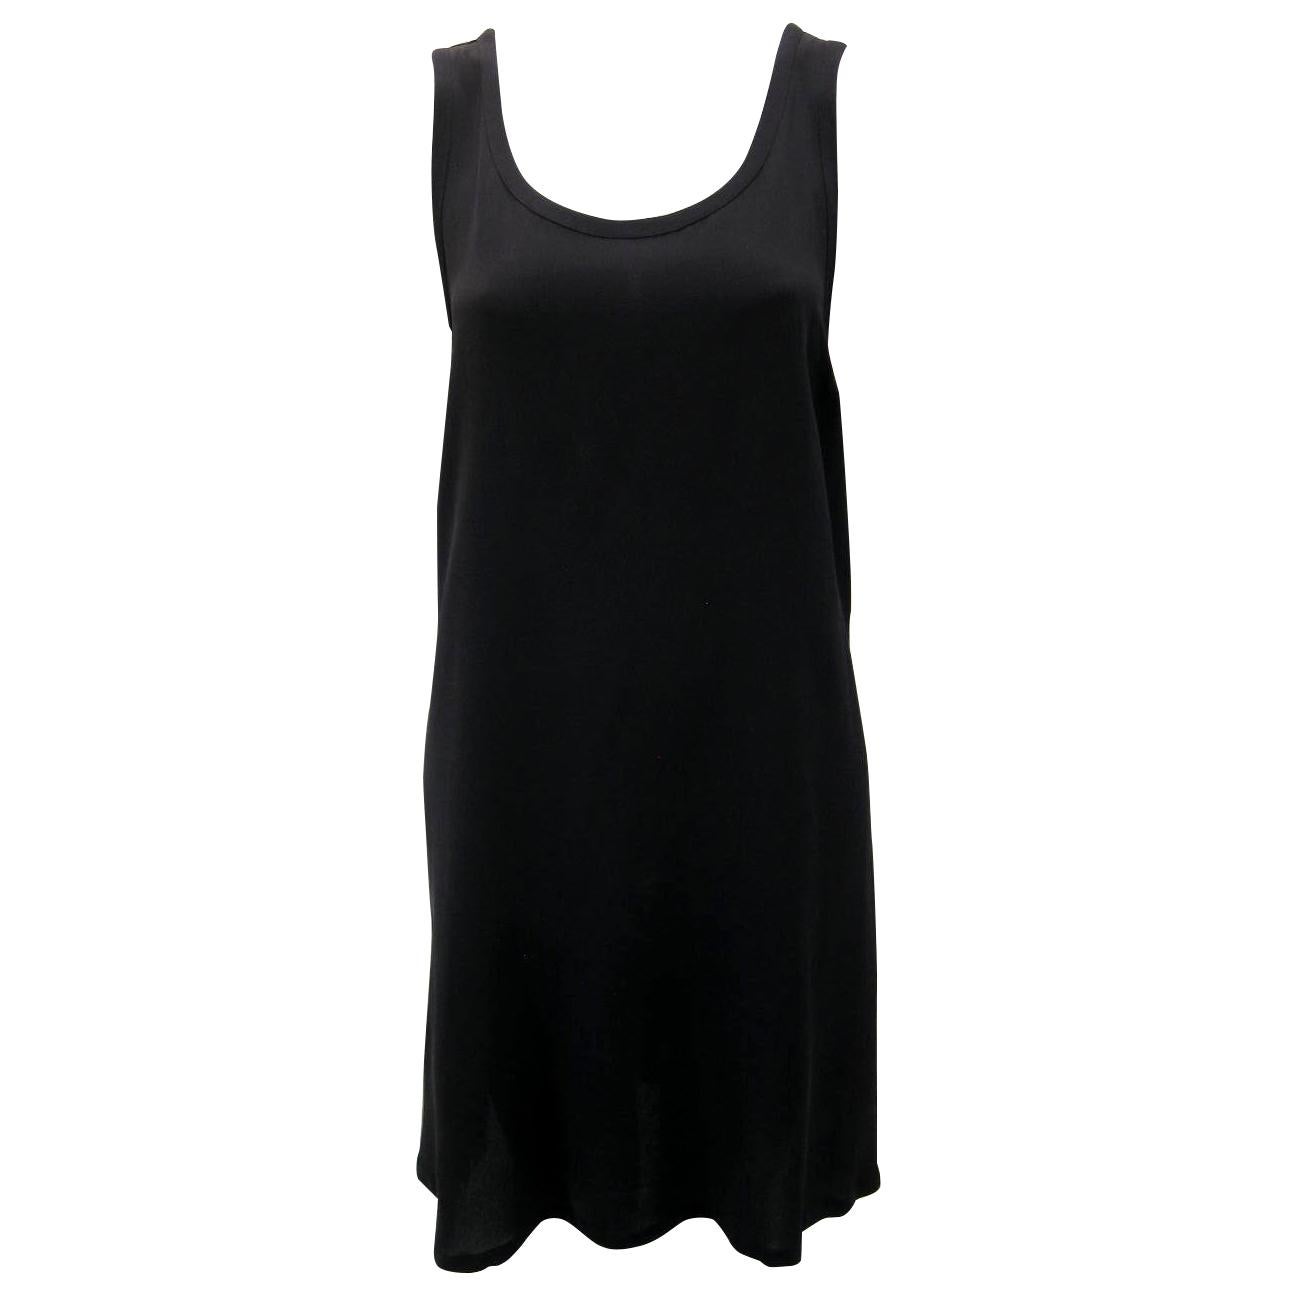 Ann Demeulemeester Simple Black Sleeveless A-Line Silk Dress